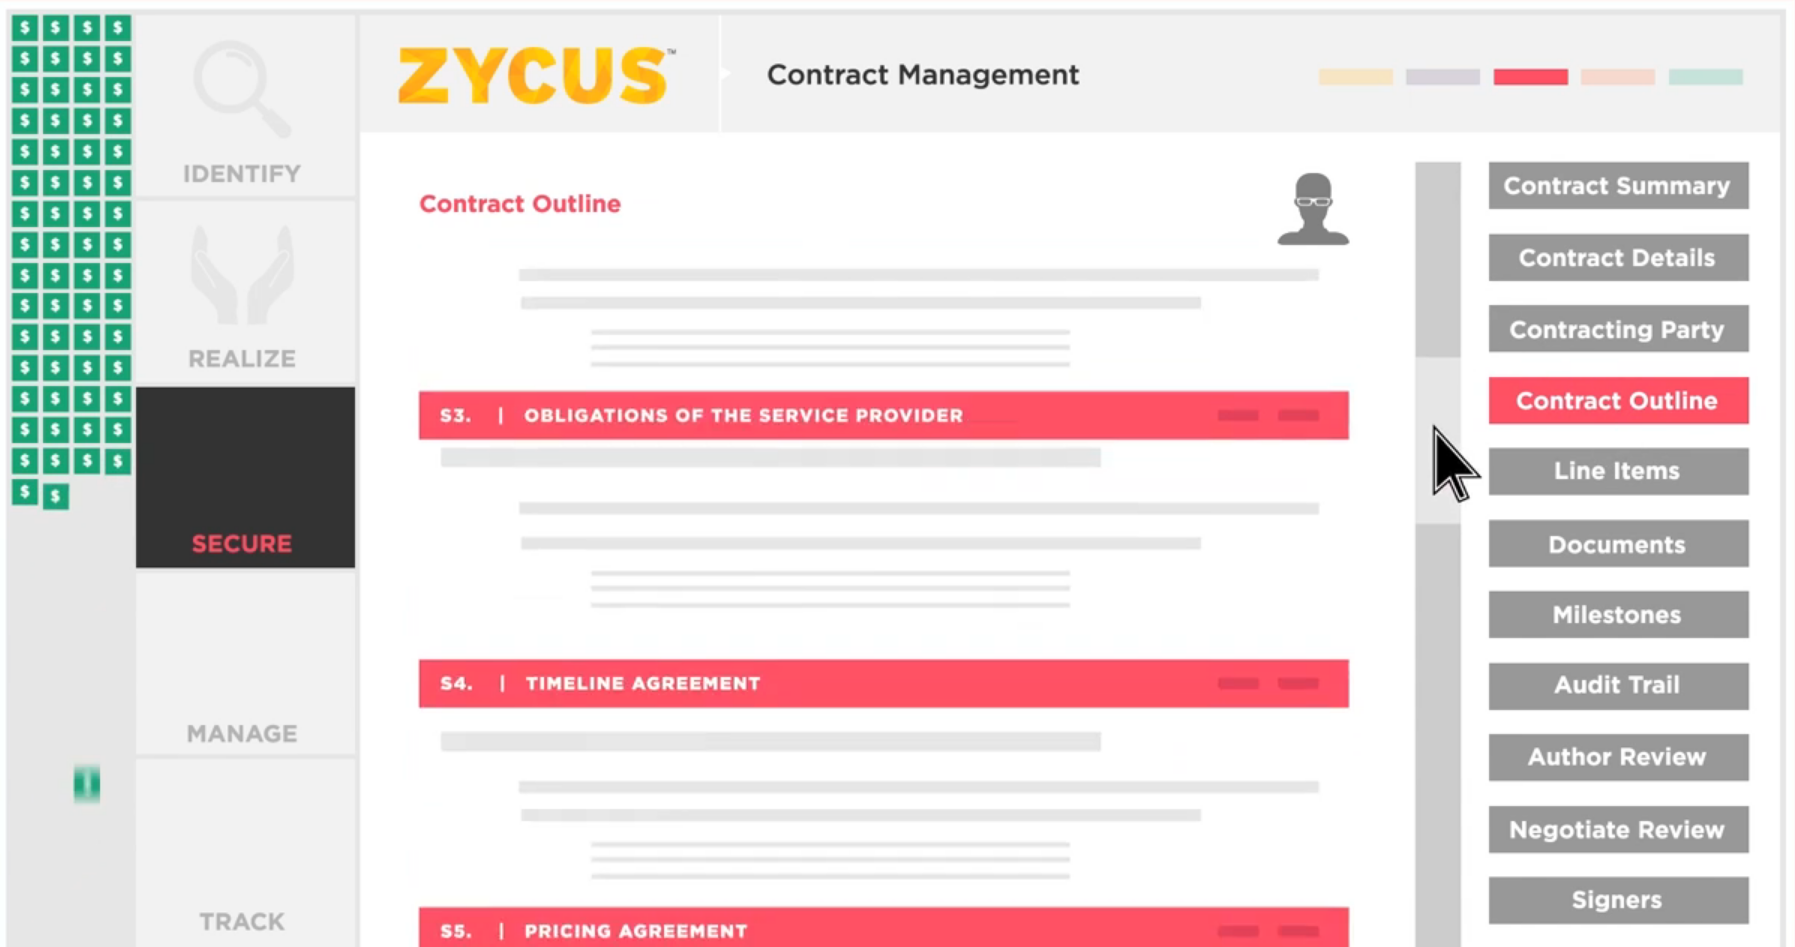 Zycus Procure-to-Pay Solution 9080da66-c6f8-4856-a840-29c47ca6e445.png